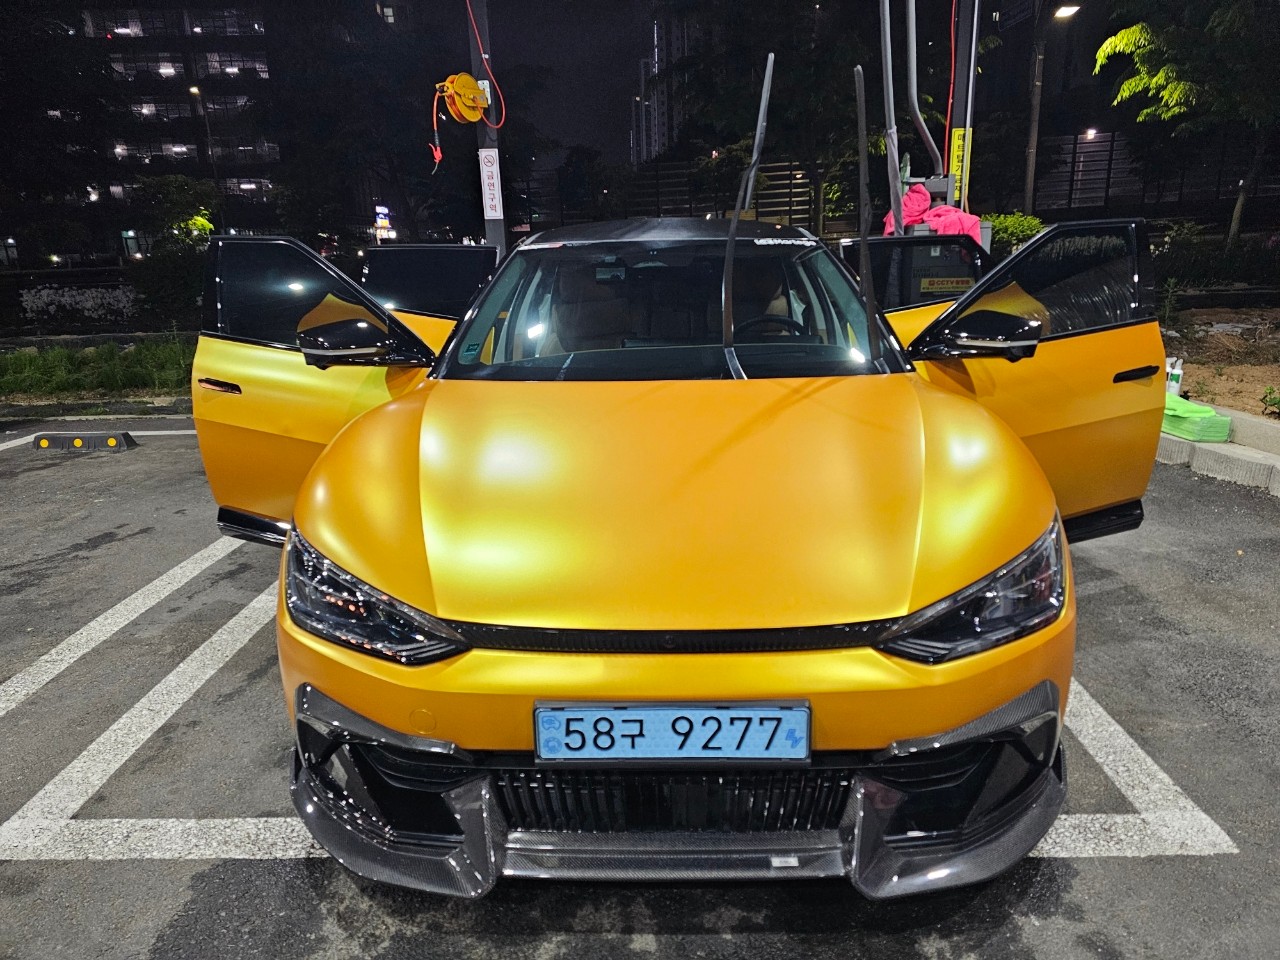 육상 차량, 차량, 노랑, 자동차 디자인이(가) 표시된 사진

자동 생성된 설명